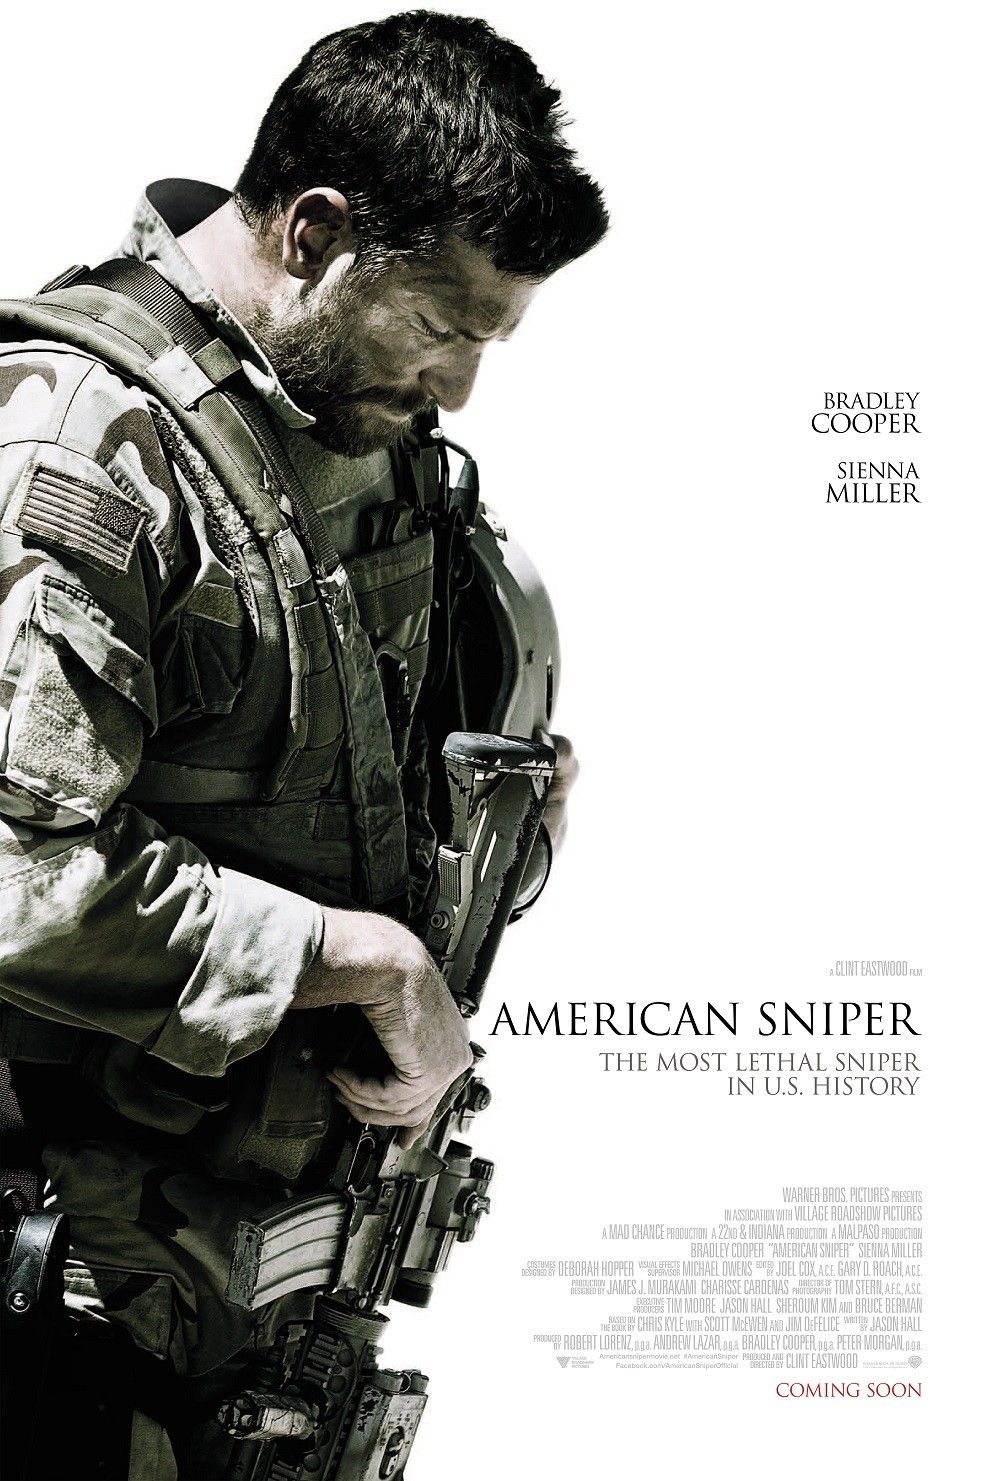 American Sniper Wallpapers